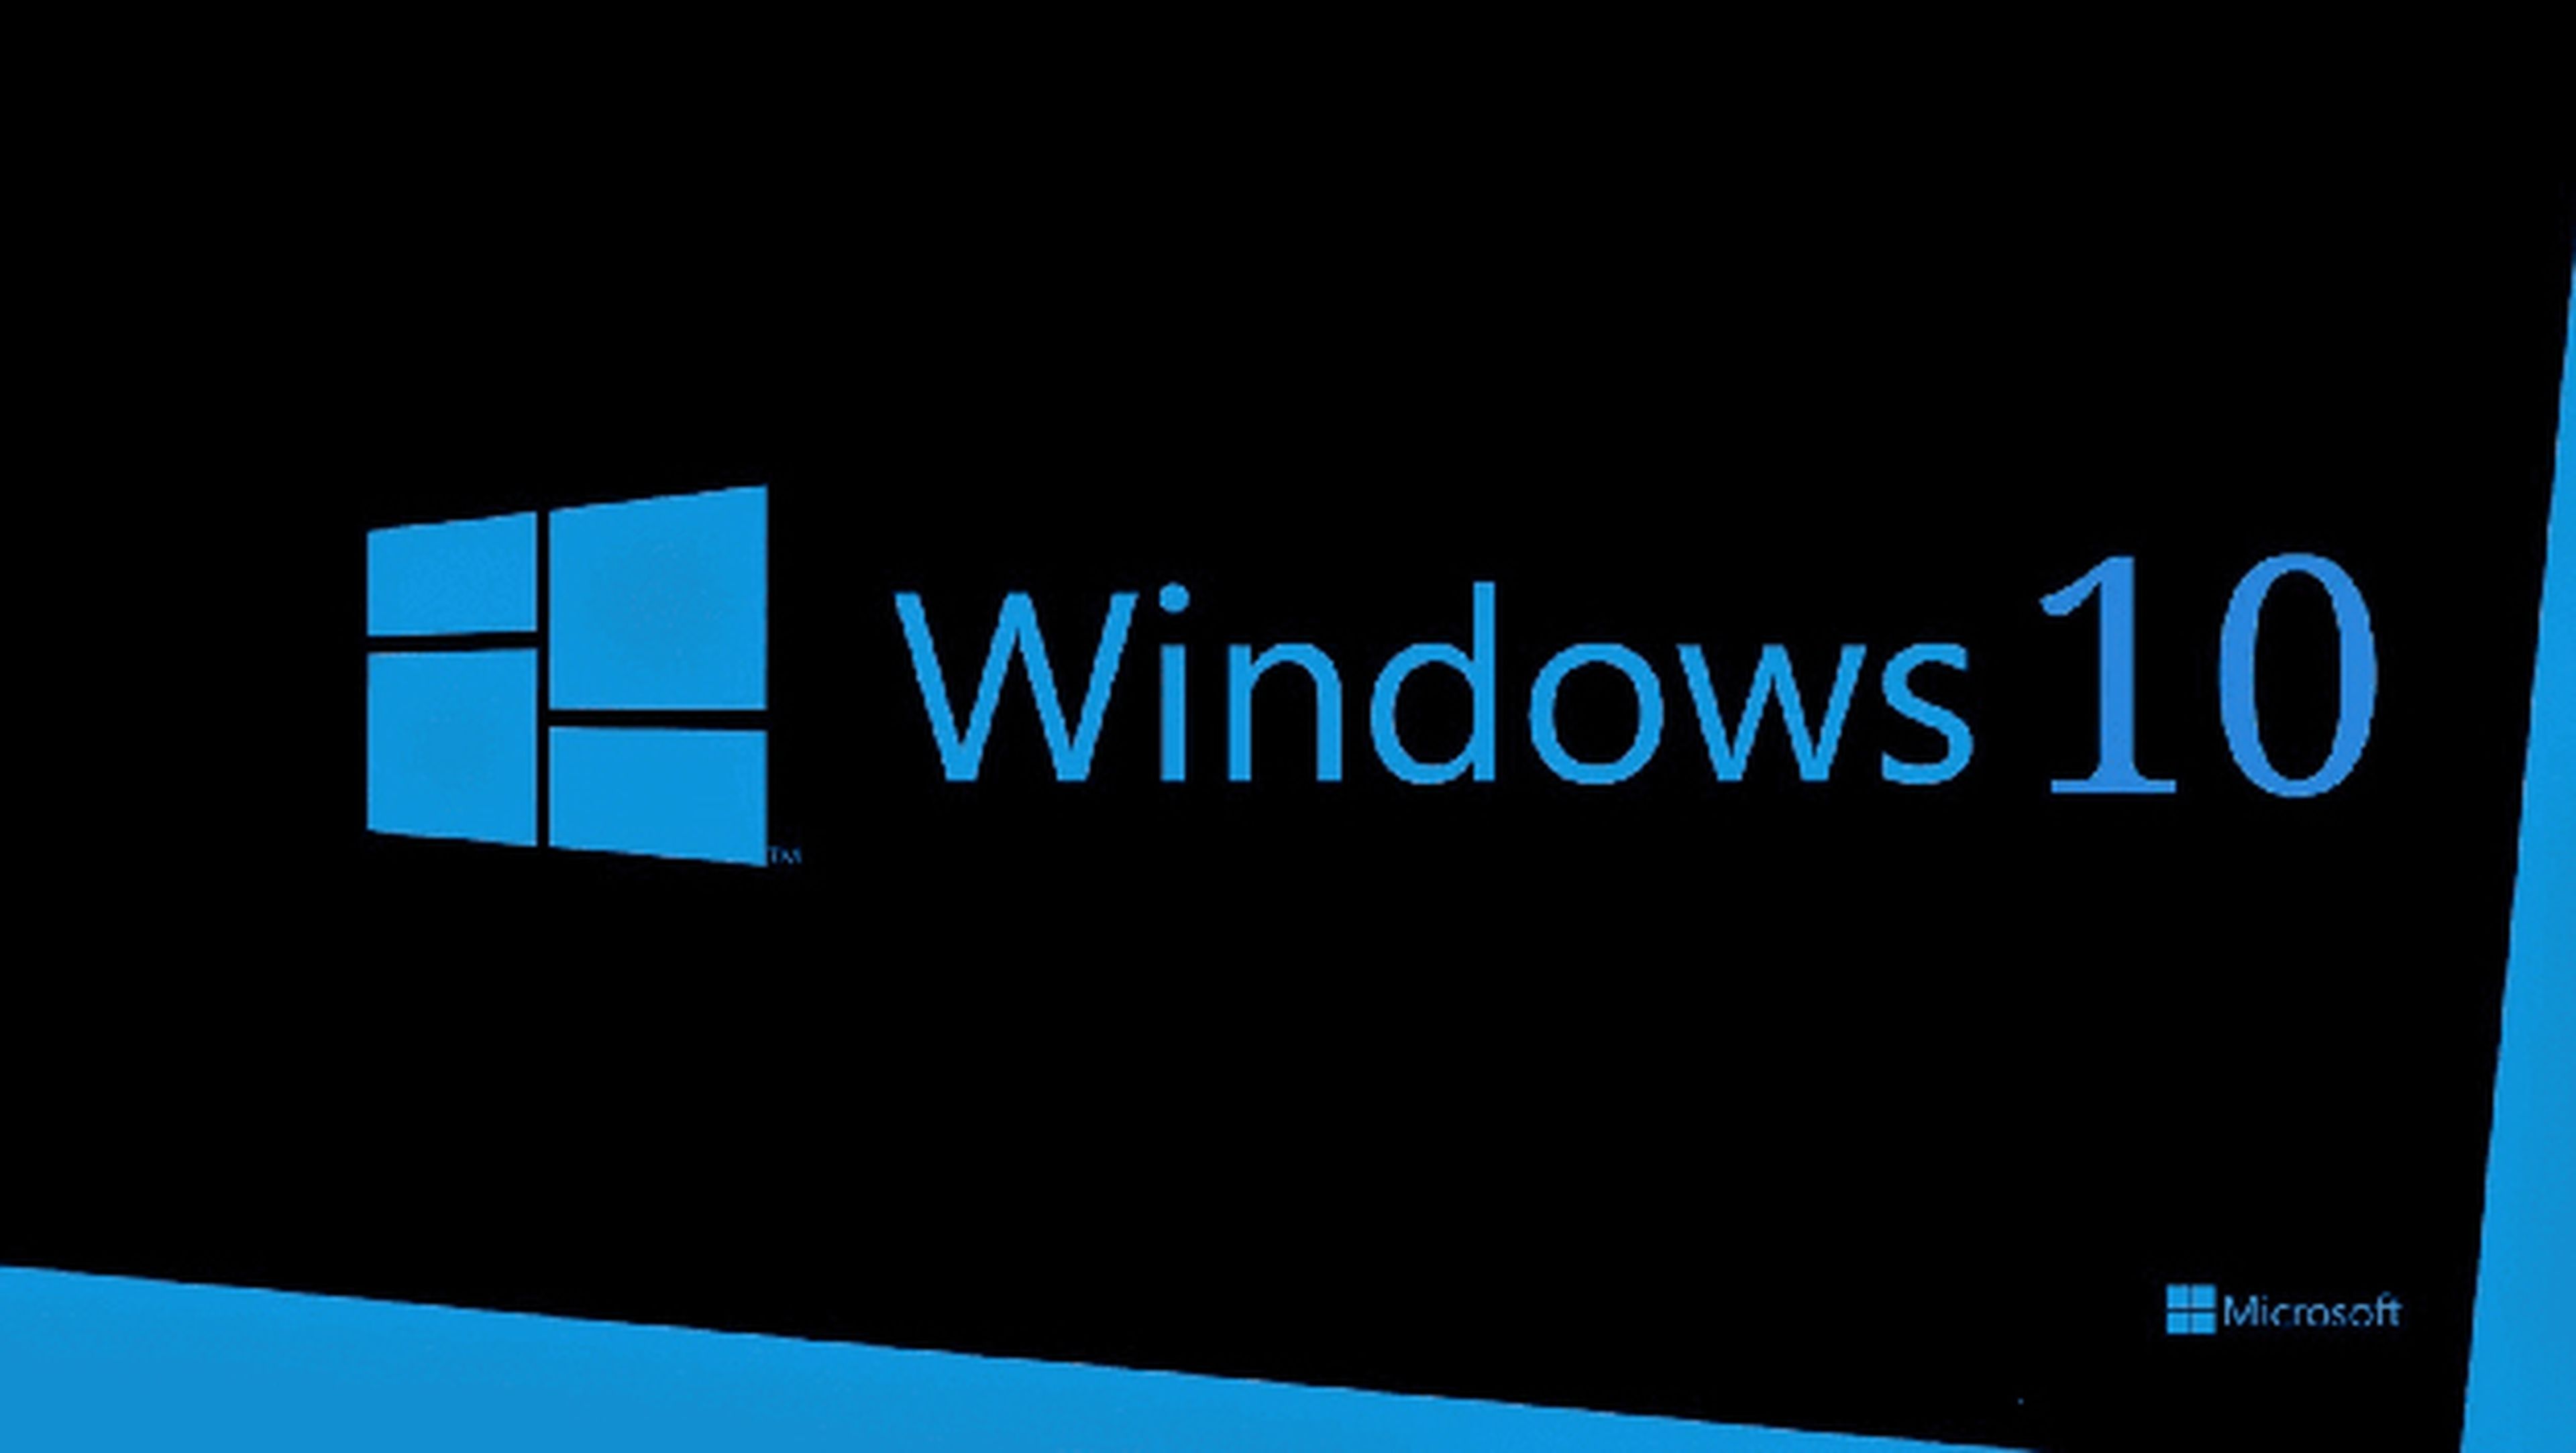 Windows 10 alcanza los 300 millones de usuarios diarios